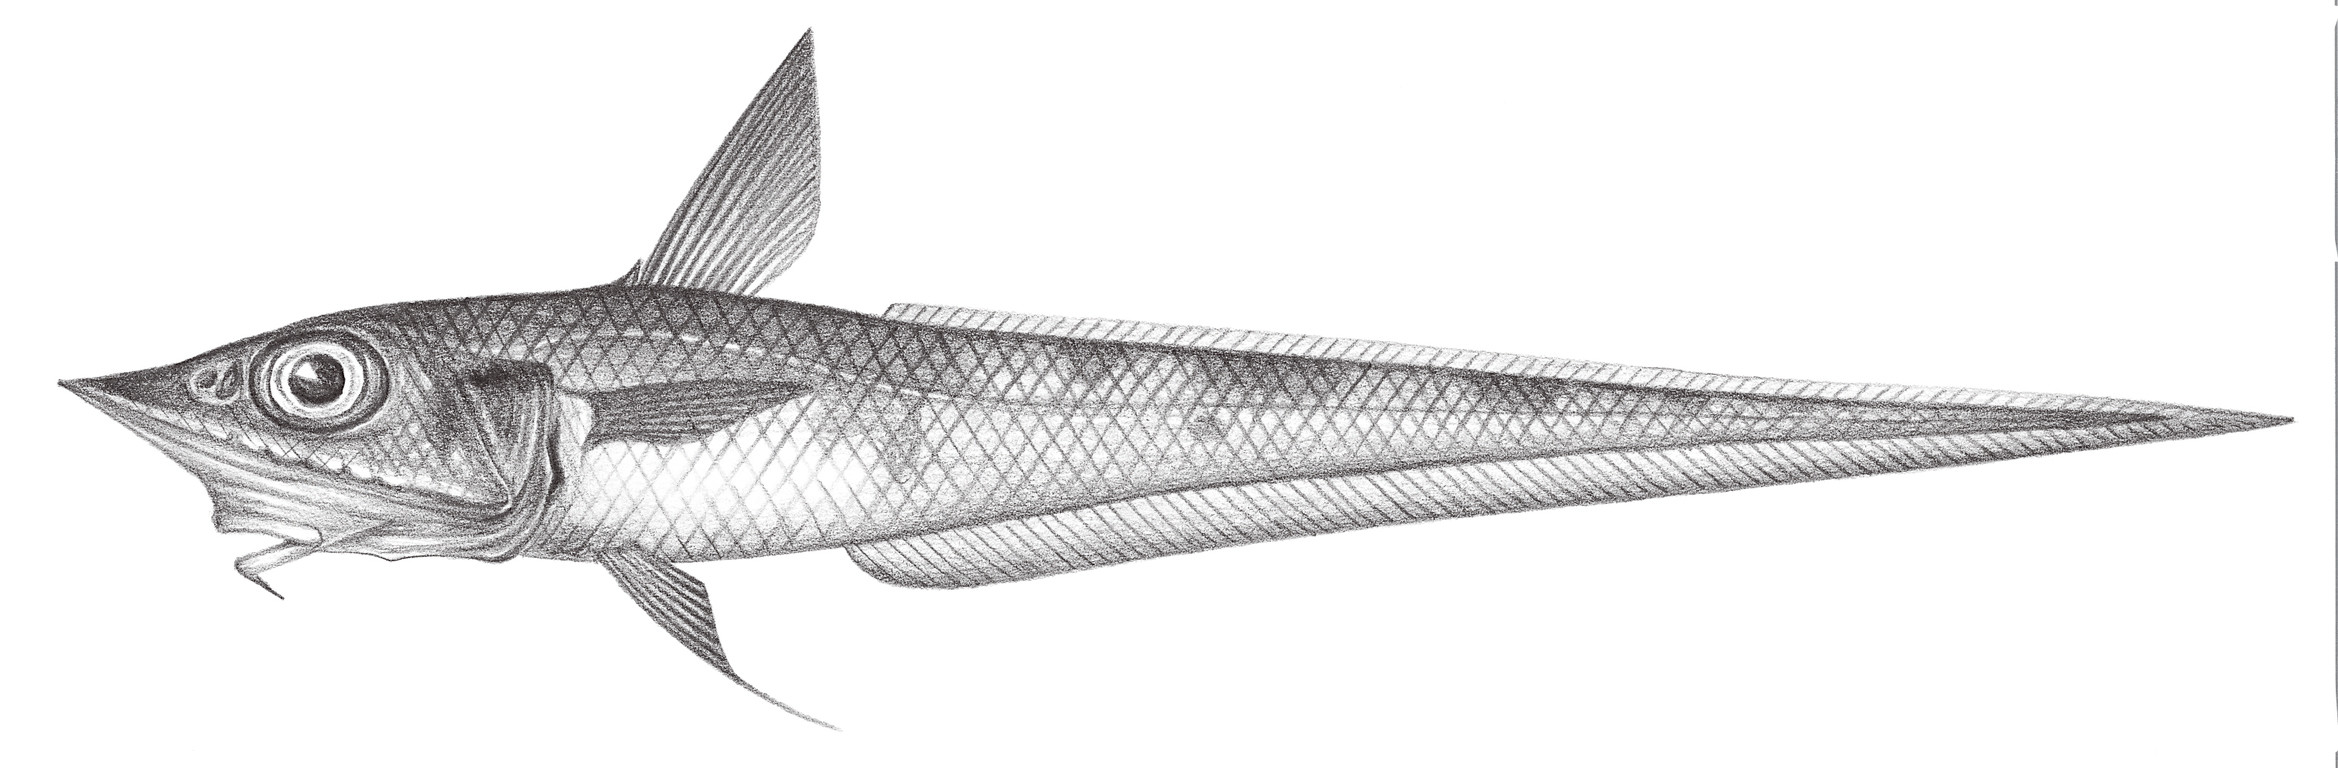 552.	鴨嘴腔吻鱈 Caelorinchus anatirostris Jordan & Gilbert, 1902